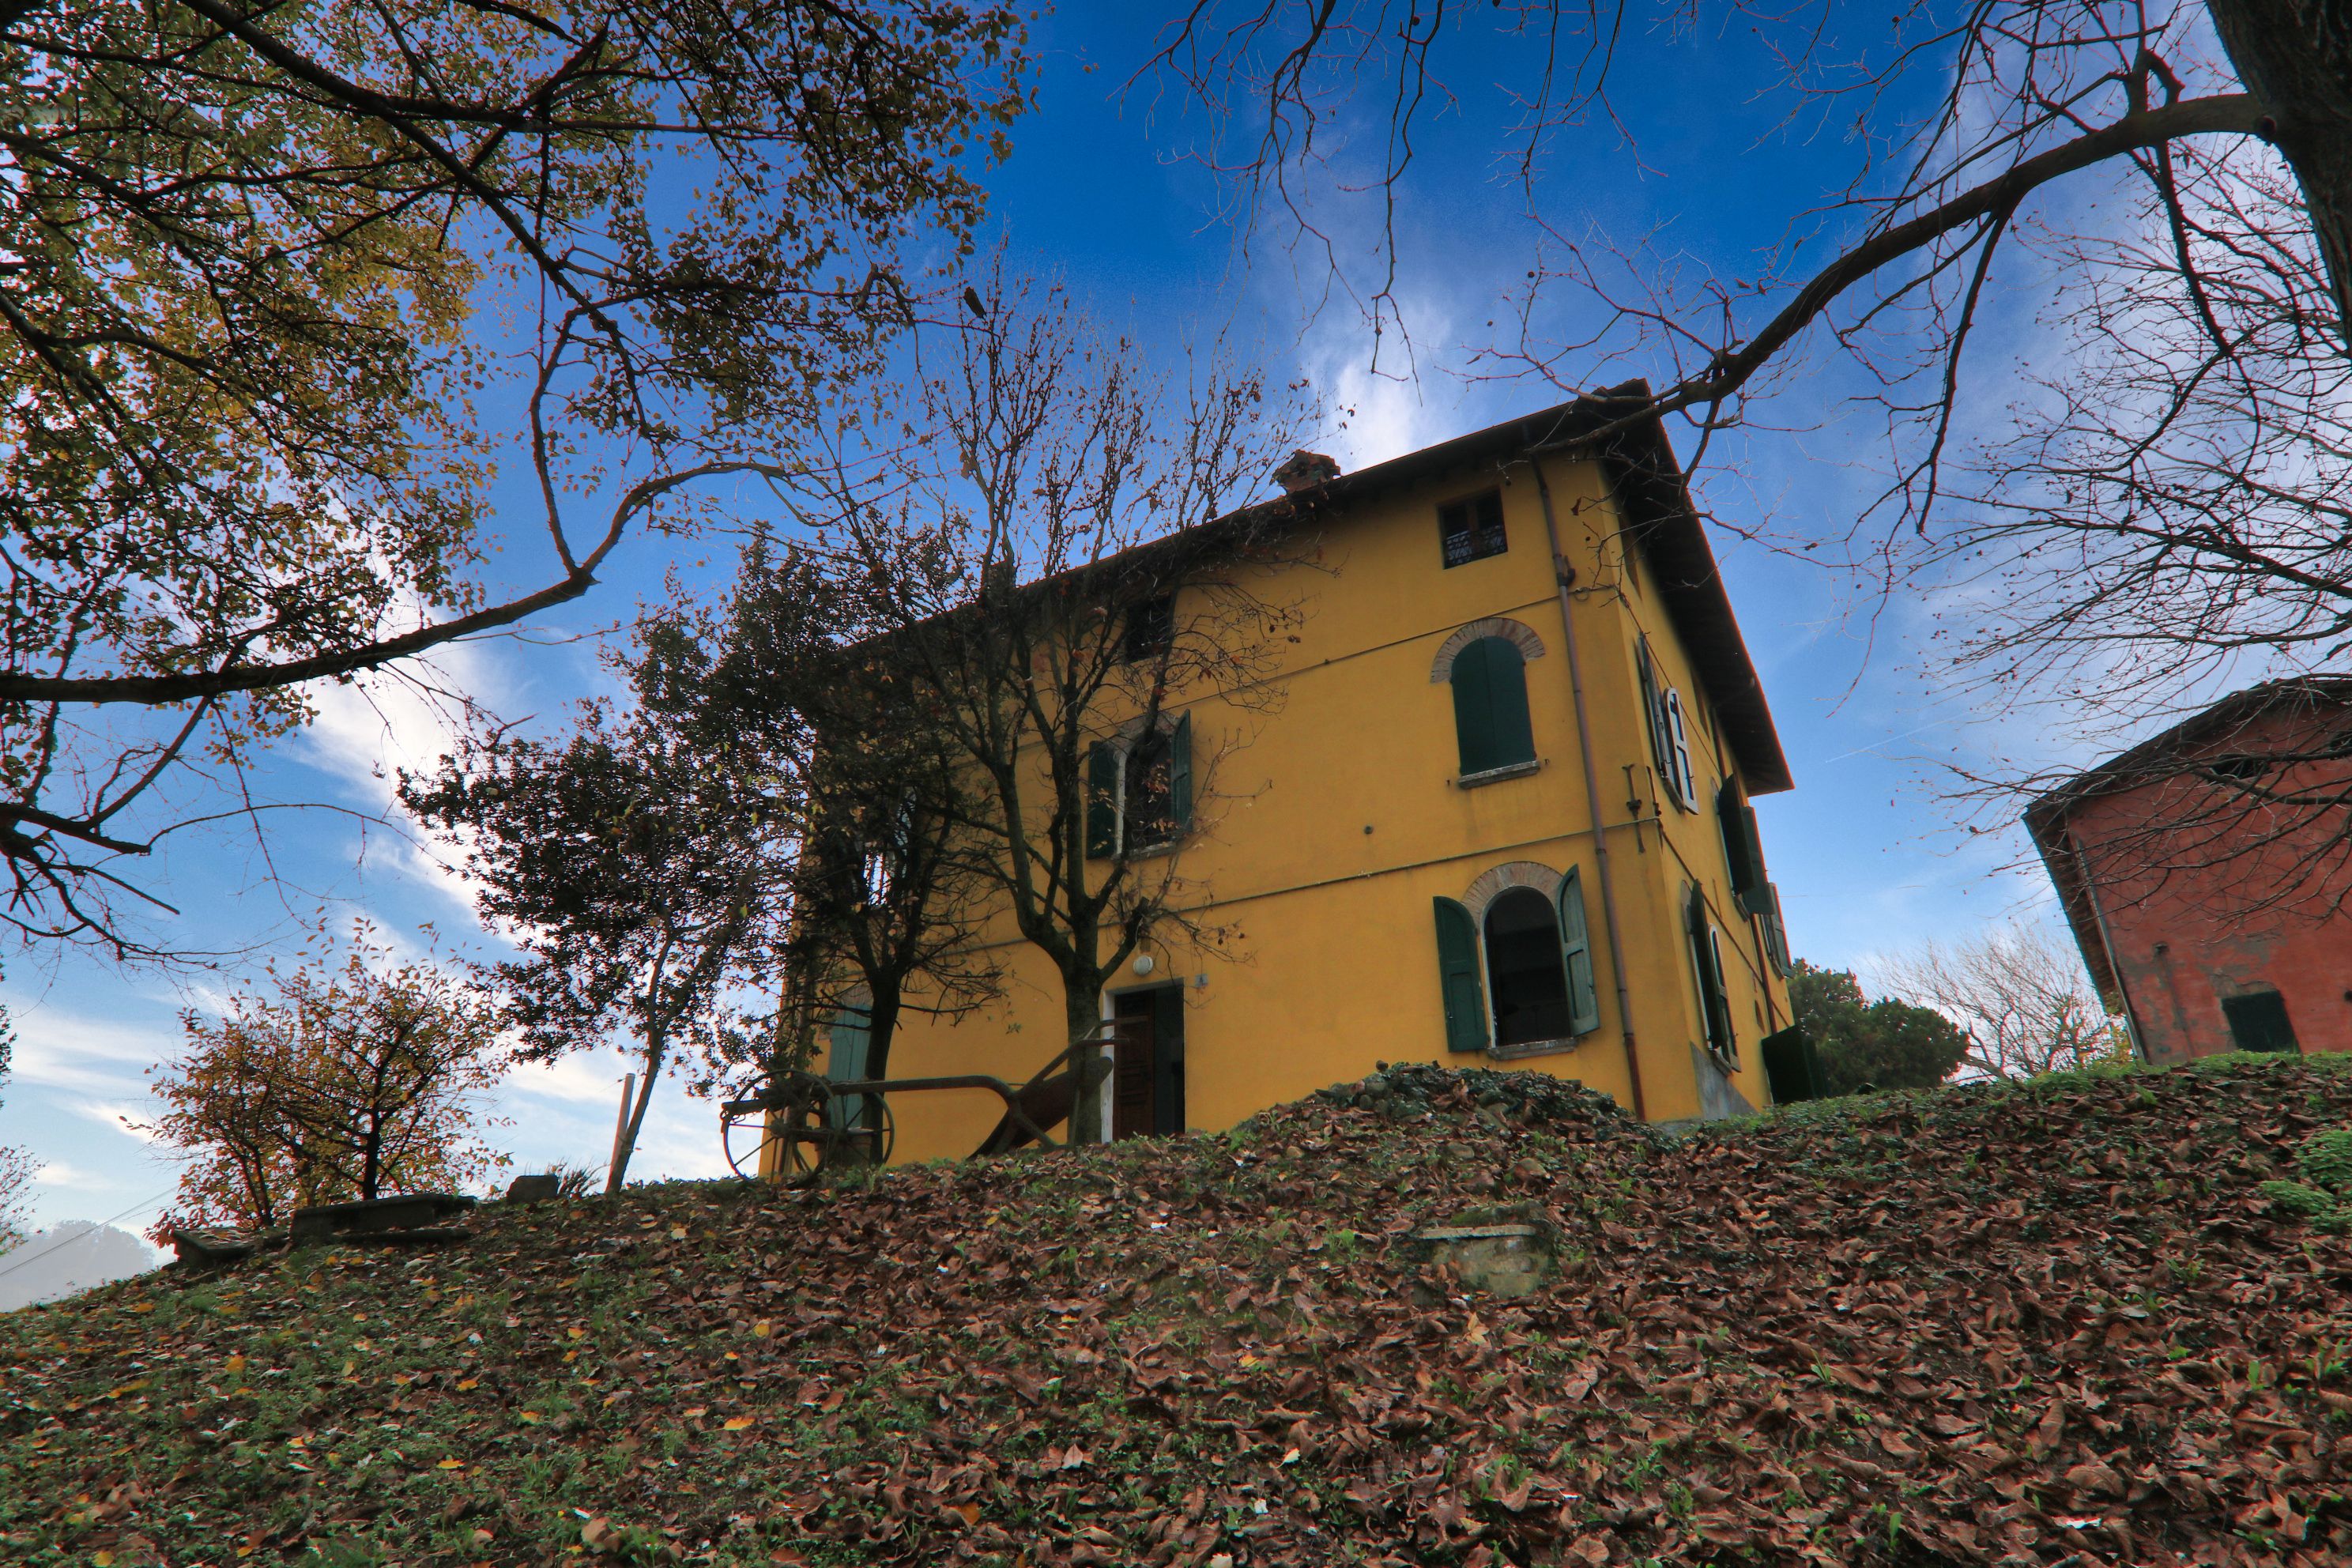 For sale cottage in quiet zone Castelvetro di Modena Emilia-Romagna